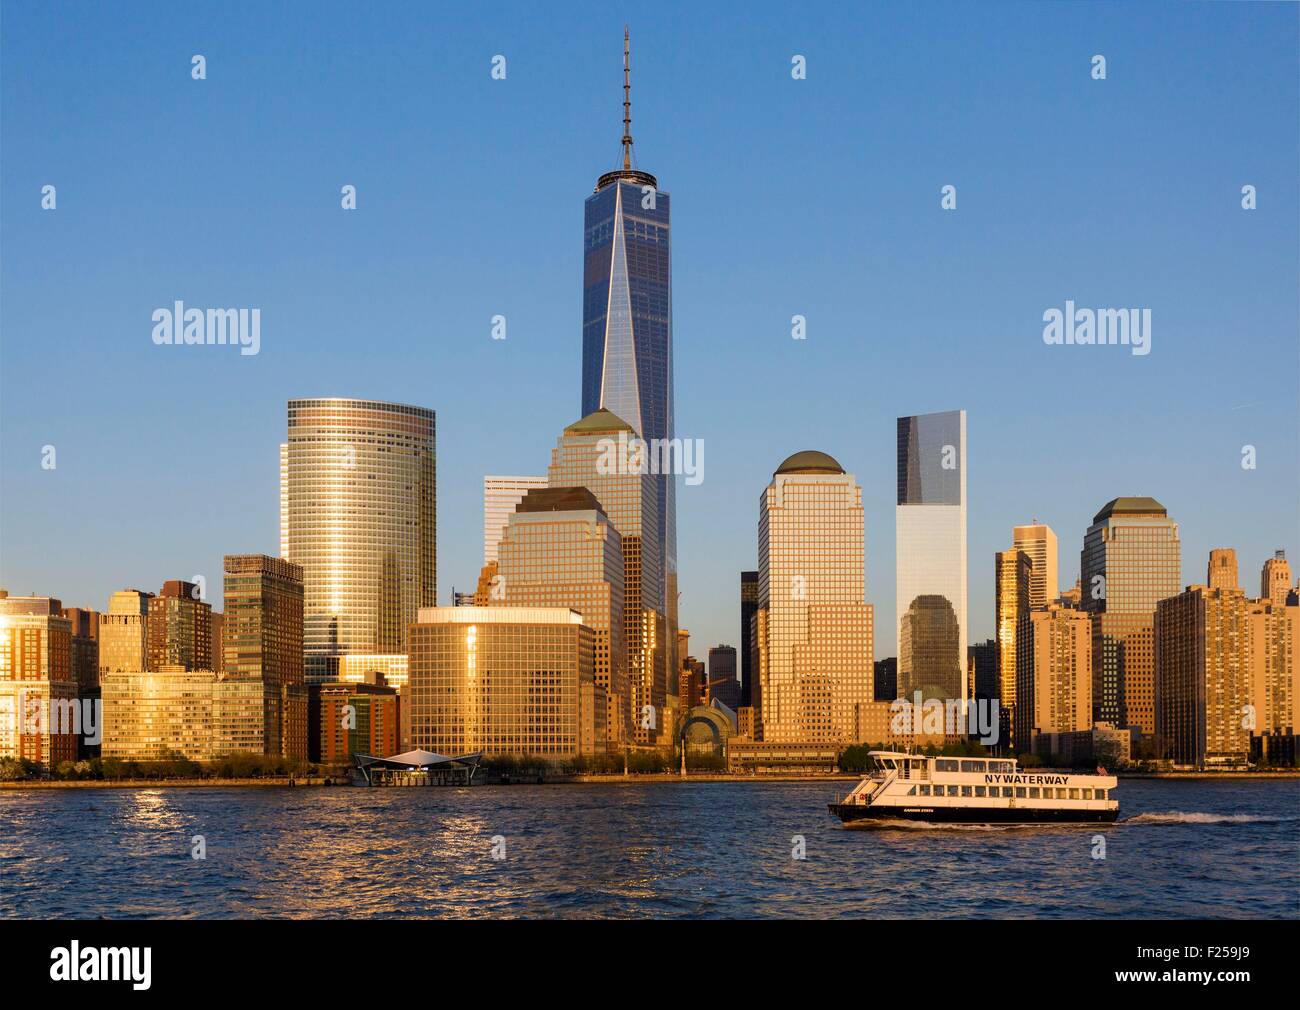 United States, New York, croisière autour de l'île de Manhattan, le One World Trade Center Banque D'Images